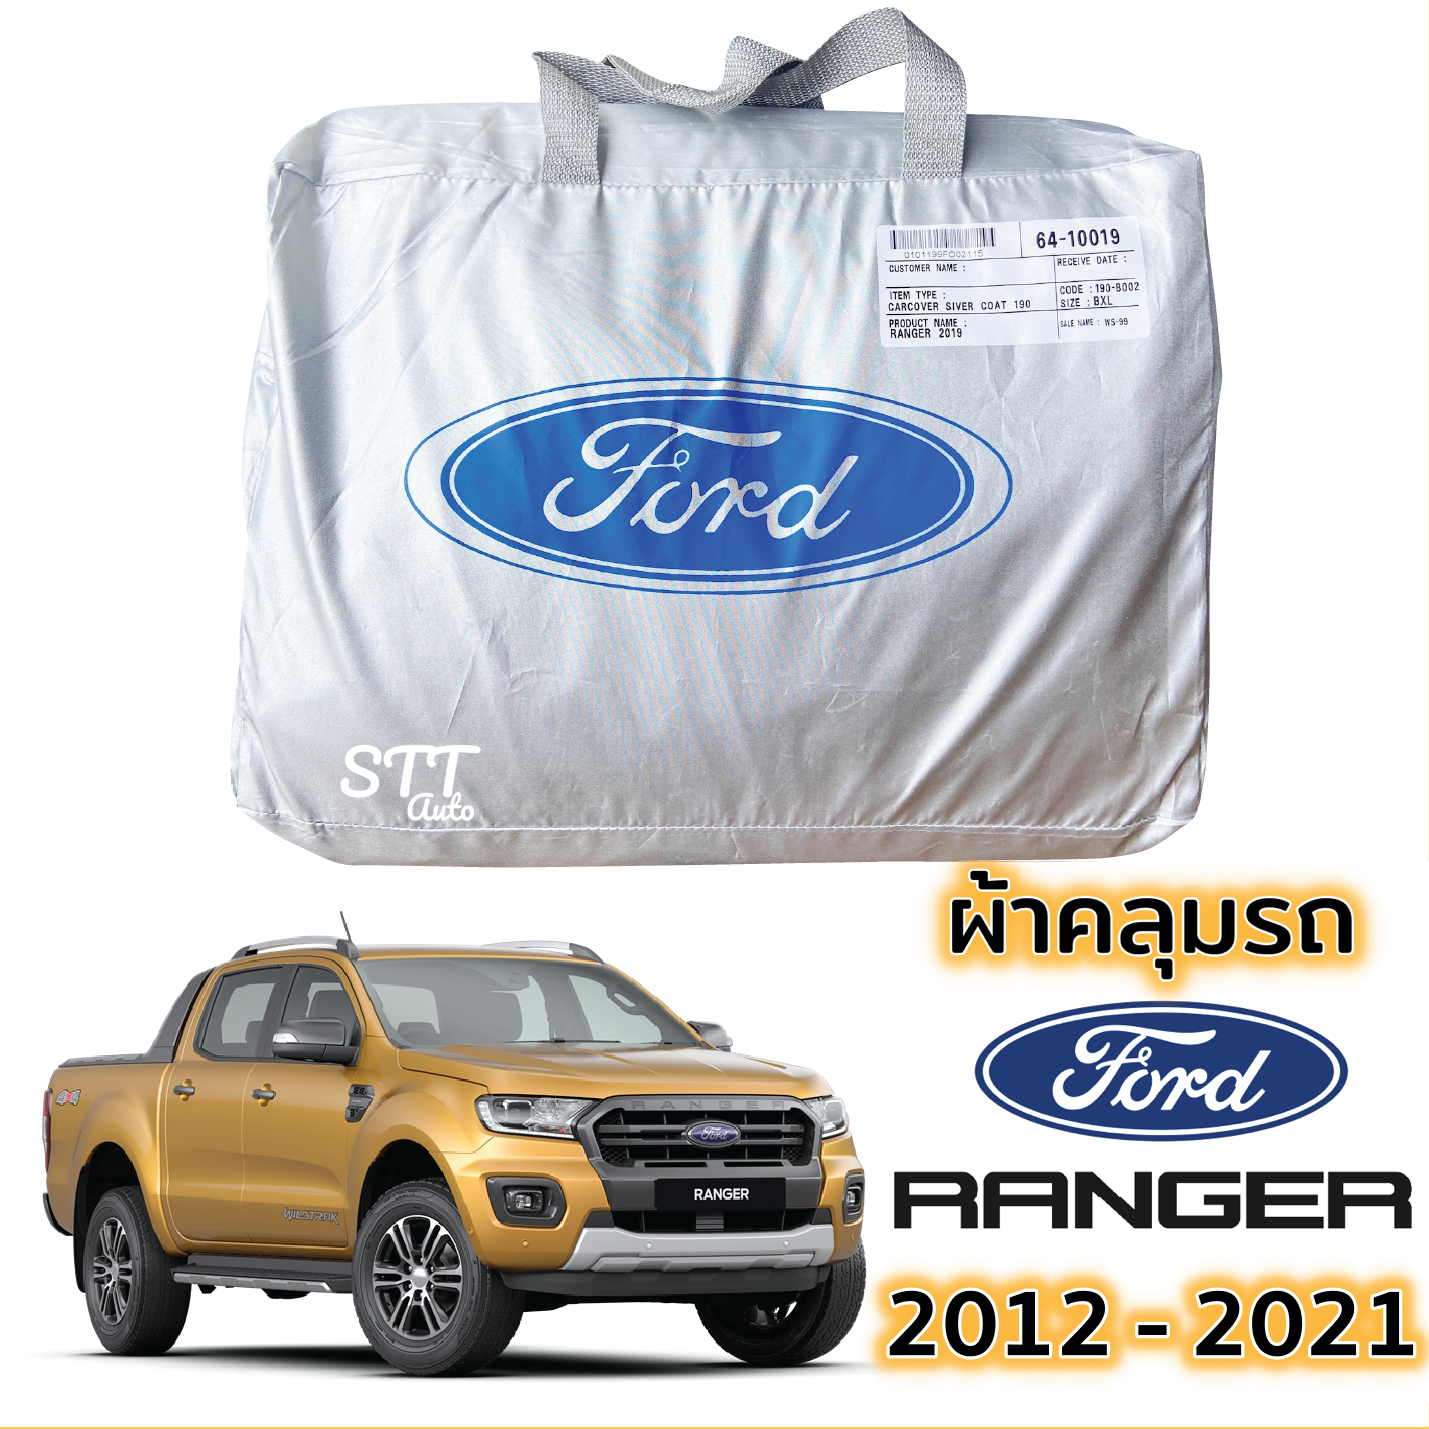 ภาพที่ให้รายละเอียดเกี่ยวกับ ผ้าคลุมรถ Ford RANGER ปี 2012 - 2021 ผ้าคลุมรถ ตรงรุ่น ผ้าSilverCoat ทนแดด ไม่ละลาย ford ranger ฟอร์ด เรนเจอร์ XL XLT WILDTRAK ทุกรุ่น